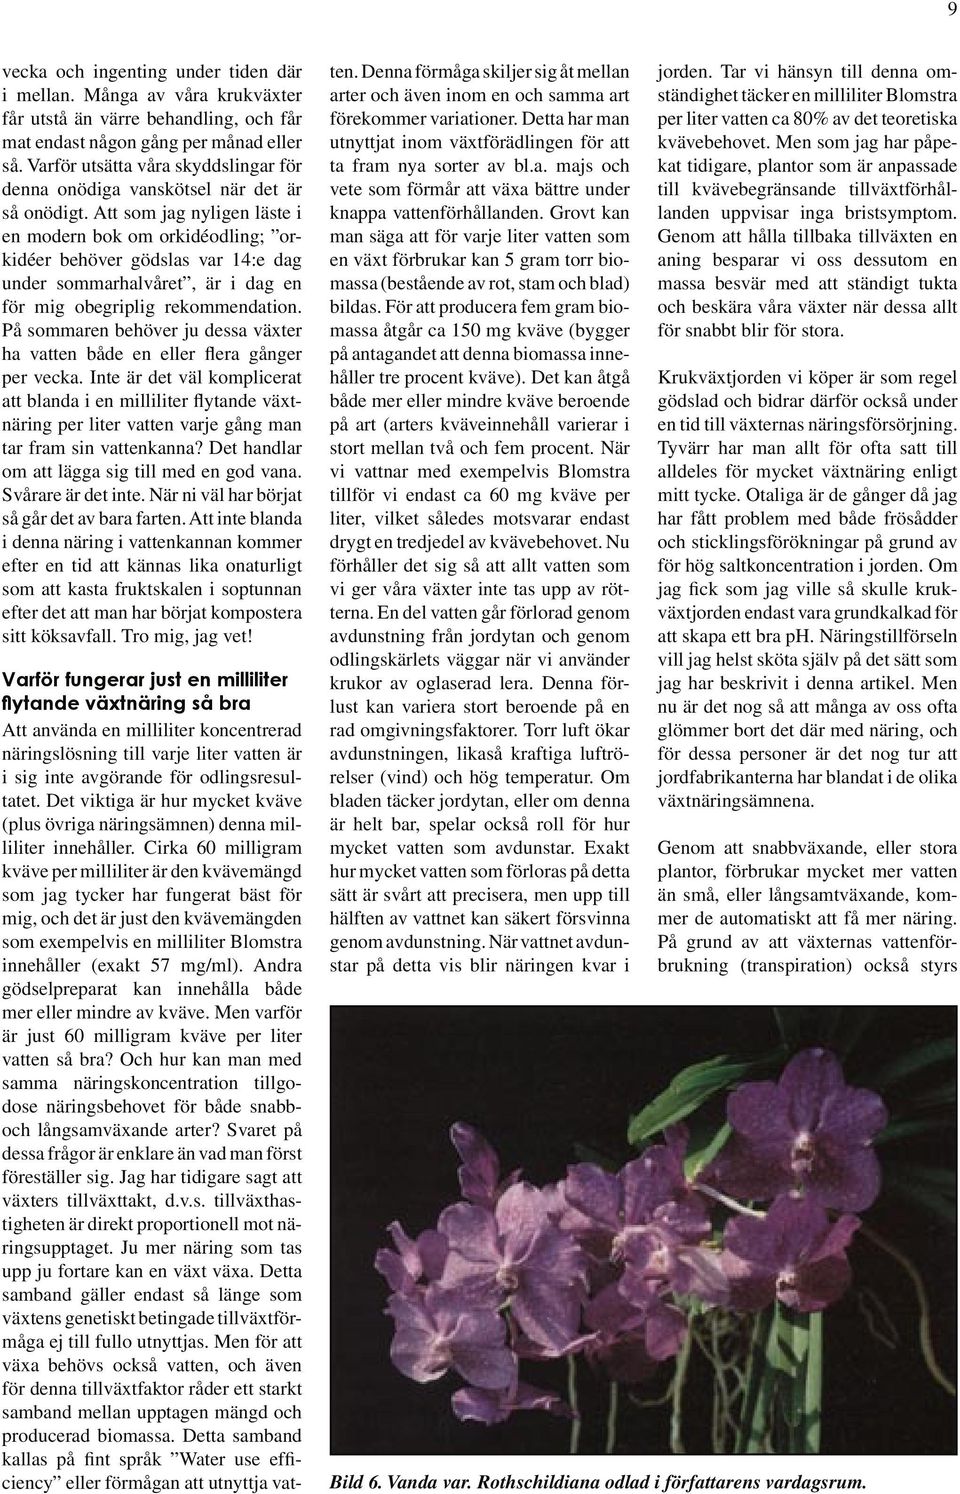 Att som jag nyligen läste i en modern bok om orkidéodling; orkidéer behöver gödslas var 14:e dag under sommarhalvåret, är i dag en för mig obegriplig rekommendation.